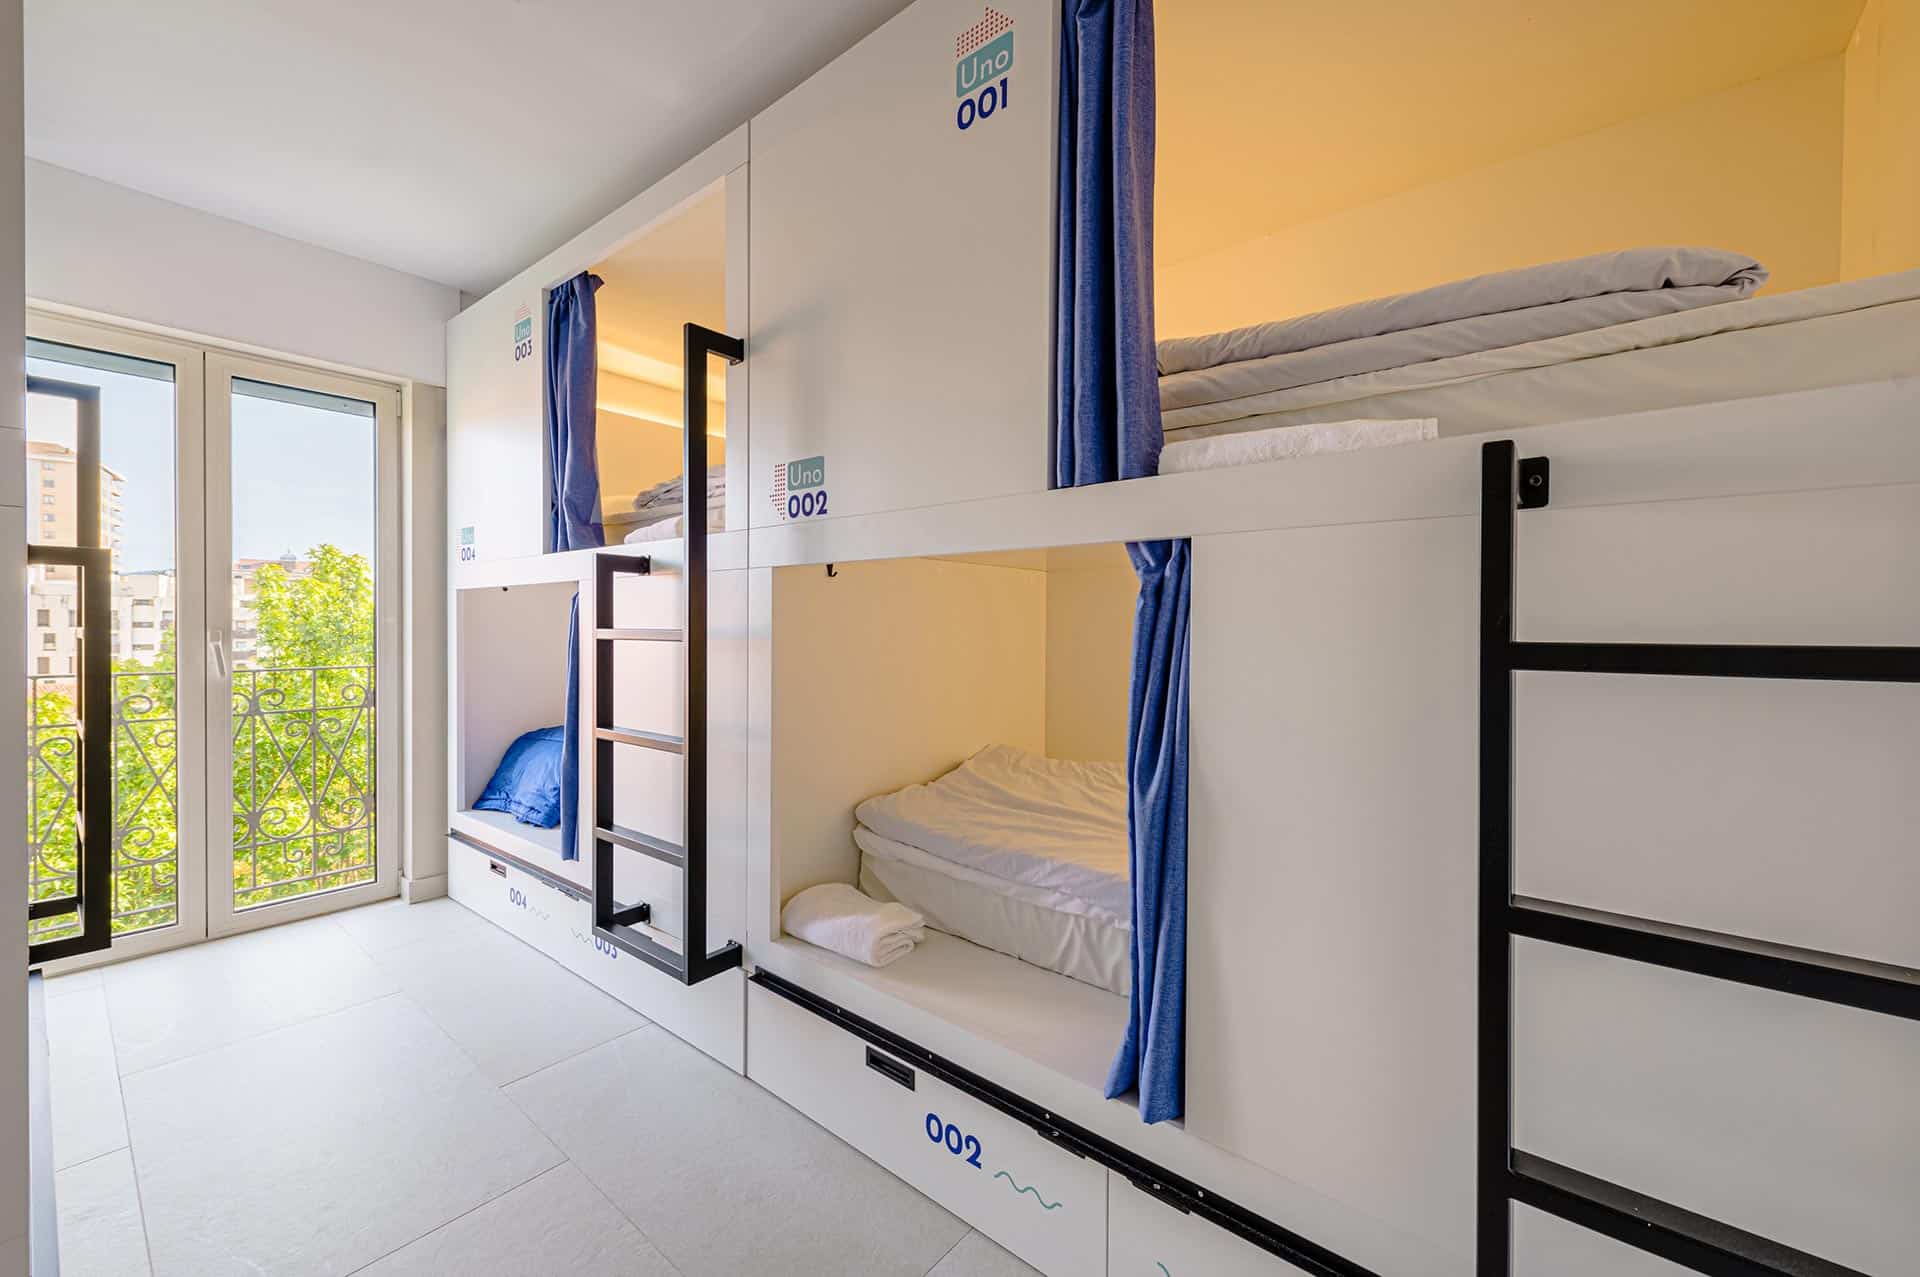 Habitación con literas de albergue Villa Miguela diseñado por Moah Arquitectos en Santander, Cantabria.